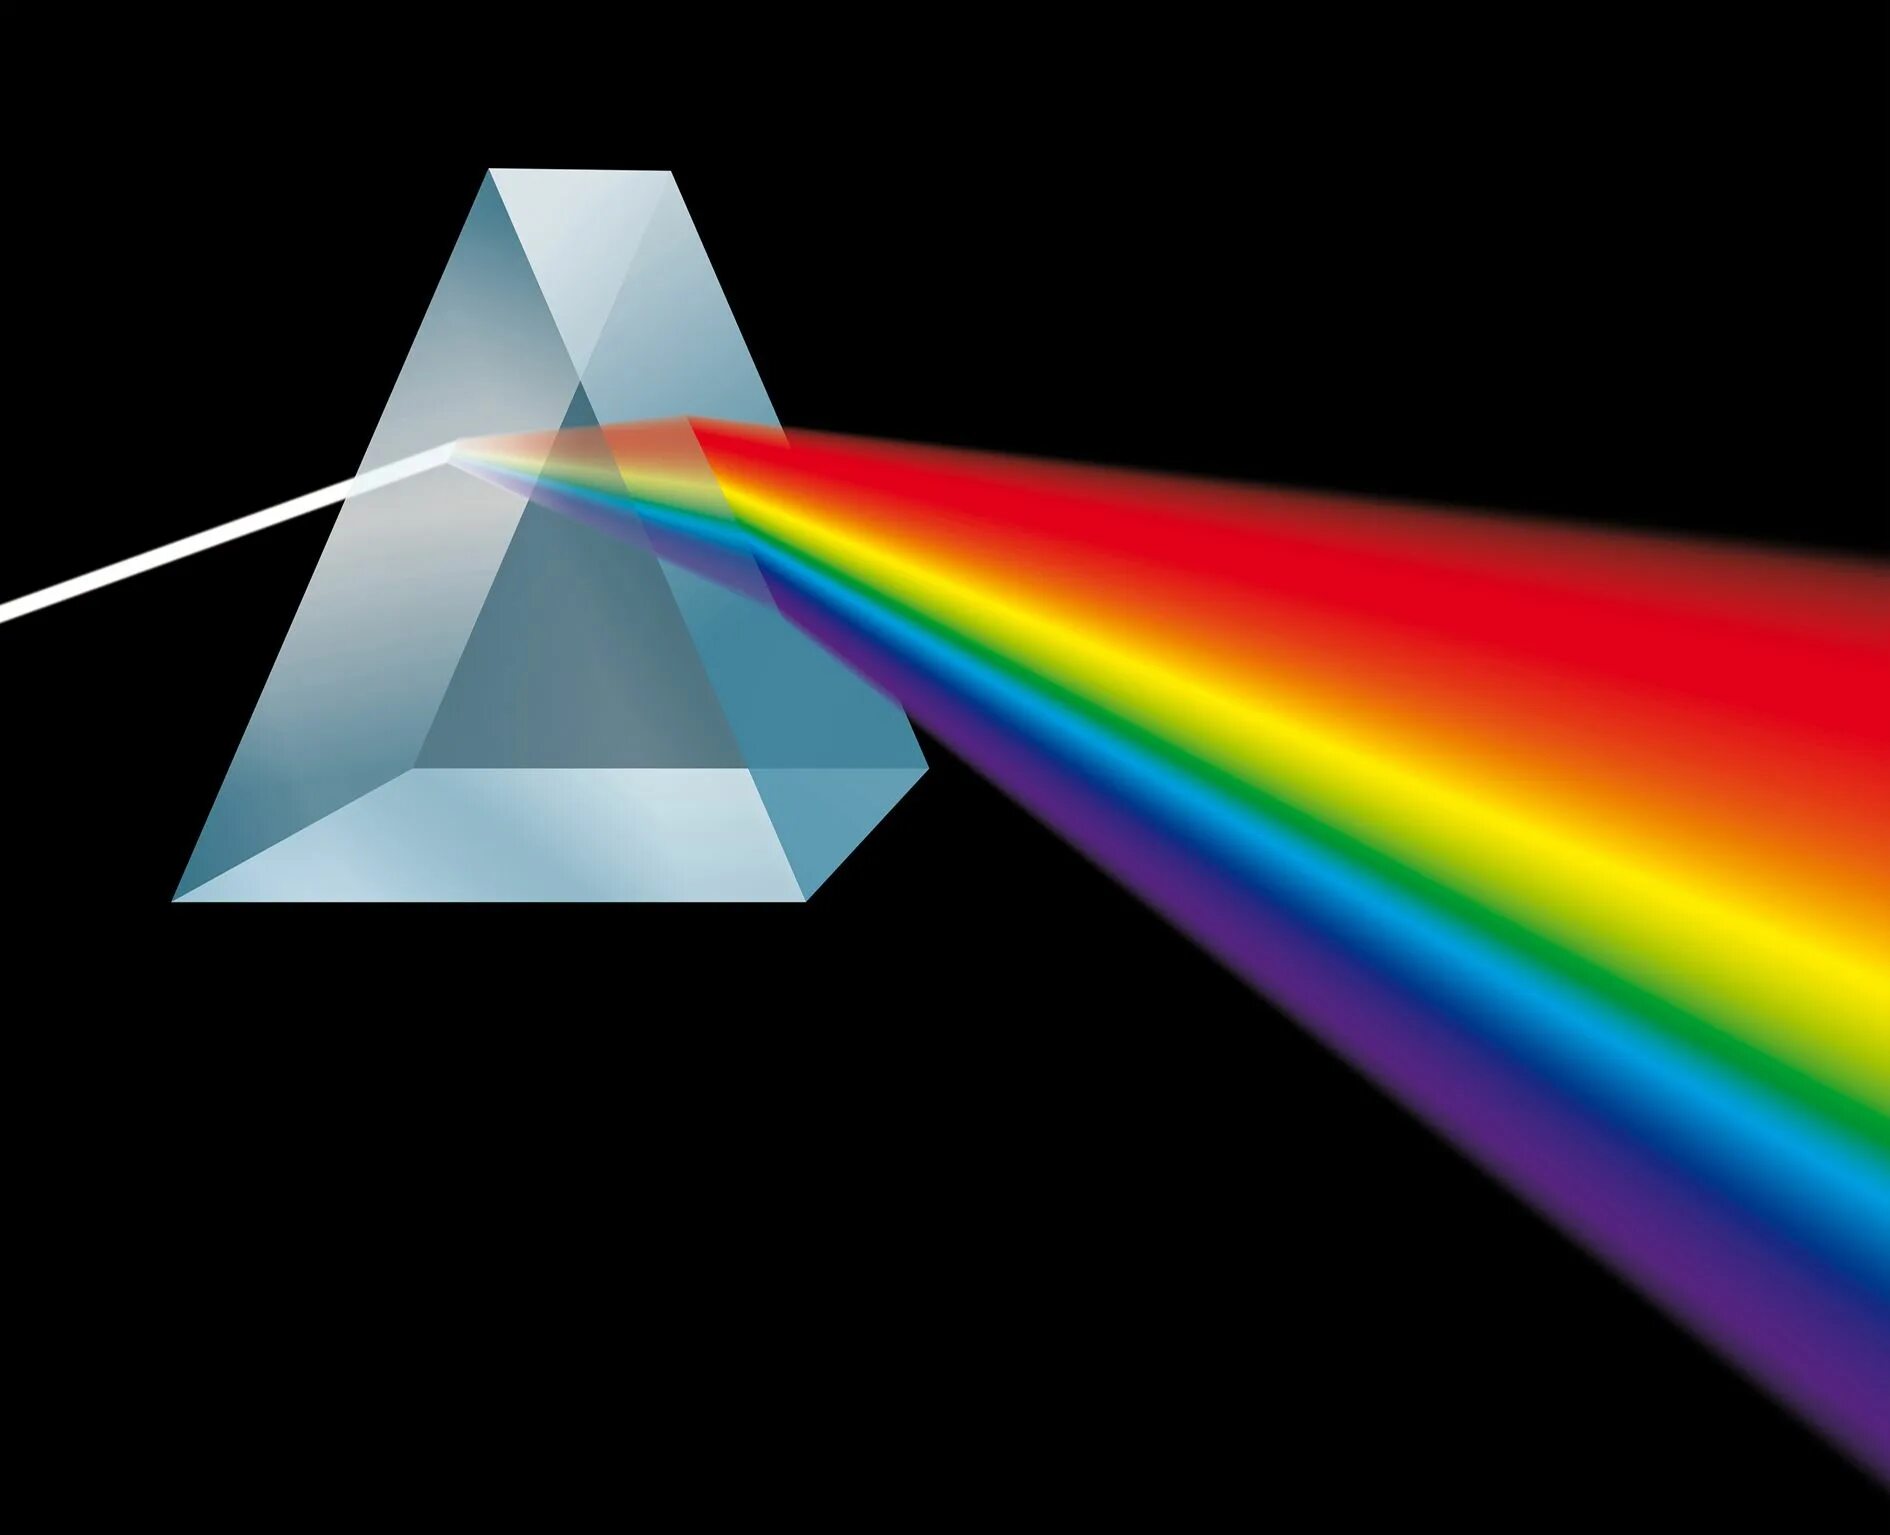 Pink Floyd Радуга. Триангулярная Призма. Дисперсия Пинк Флойд. Оптическая Призма преломляющая. Дисперсия света спектральный анализ